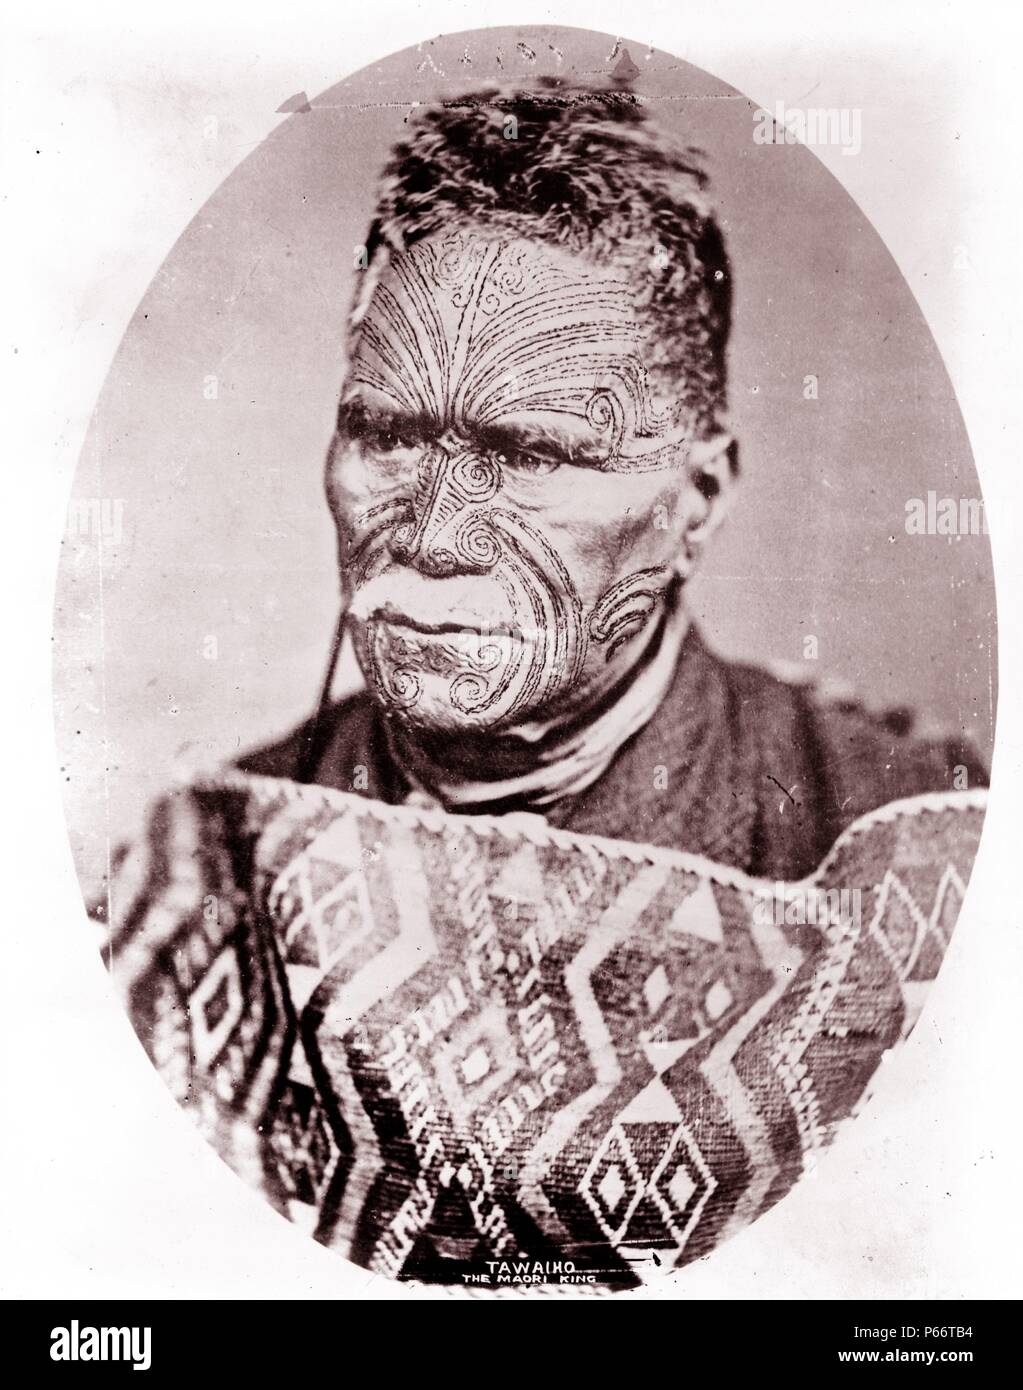 Tawaiho, il re Maori fotografia datata tra ca. 1900 e 1923. Tawaiho, il re maori della Nuova Zelanda, testa e spalle ritratto, rivolto leggermente verso sinistra. Foto Stock